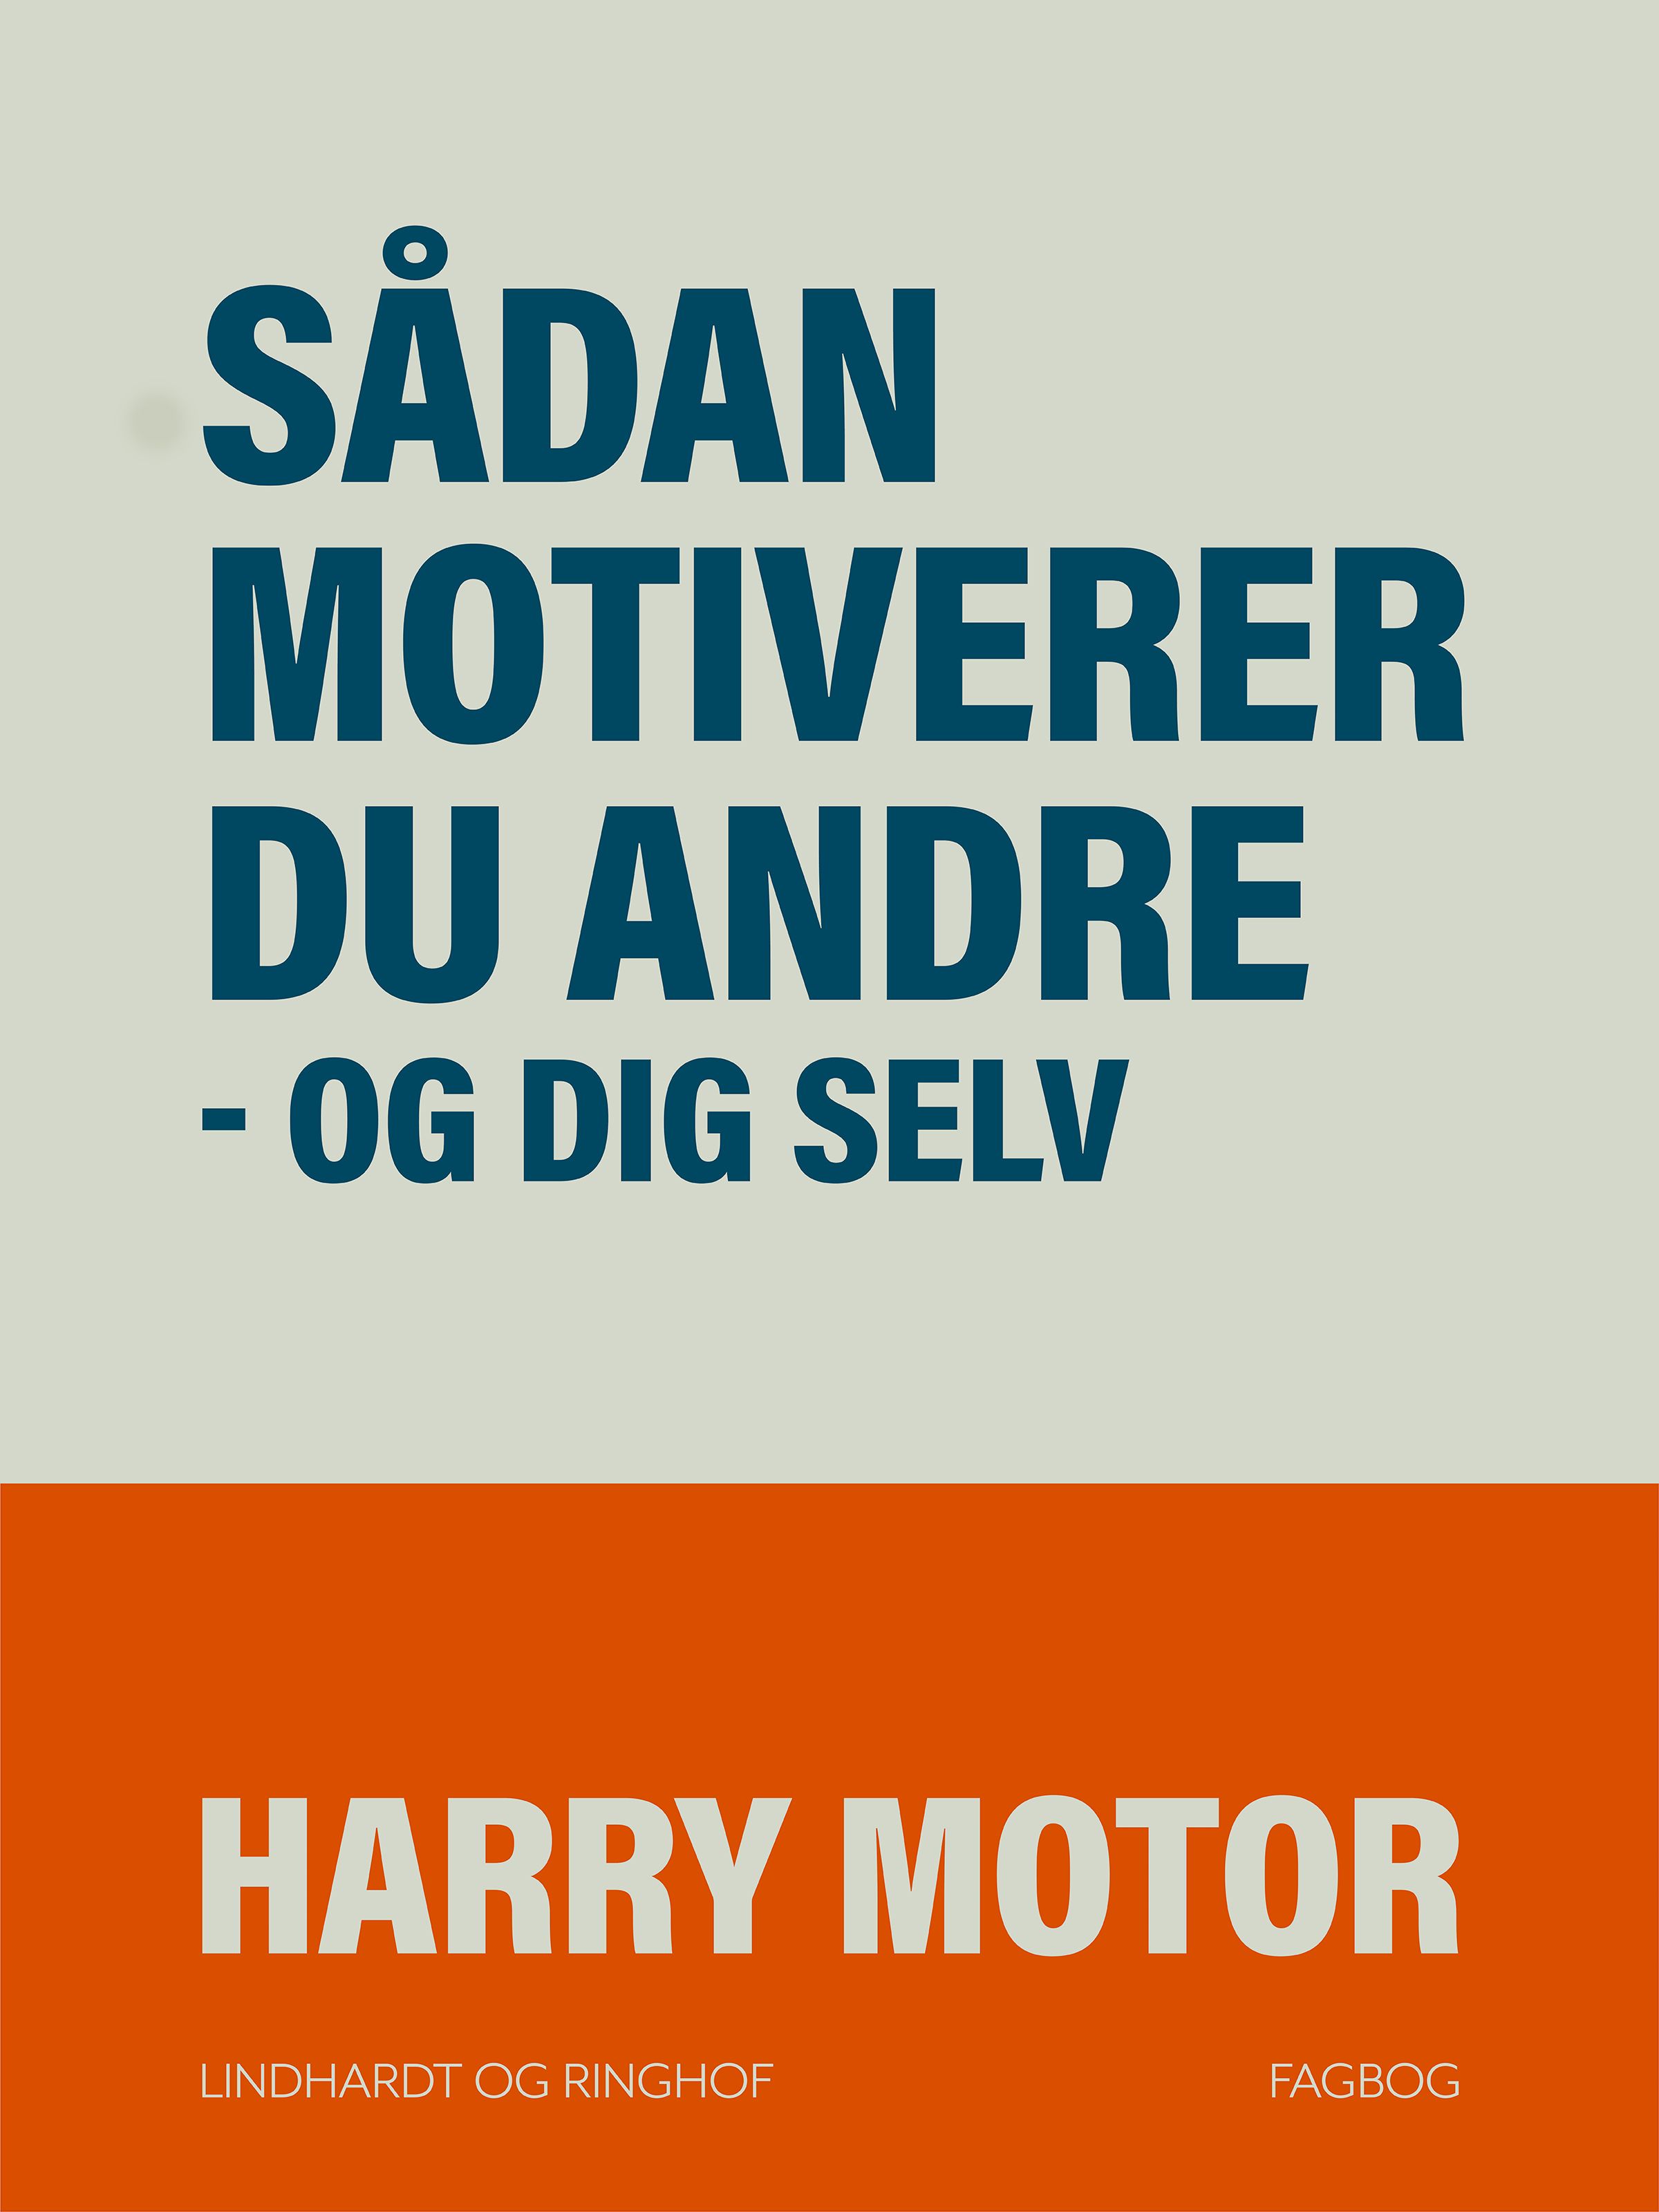 Sådan motiverer du andre - og dig selv, e-bog af Harry Motor